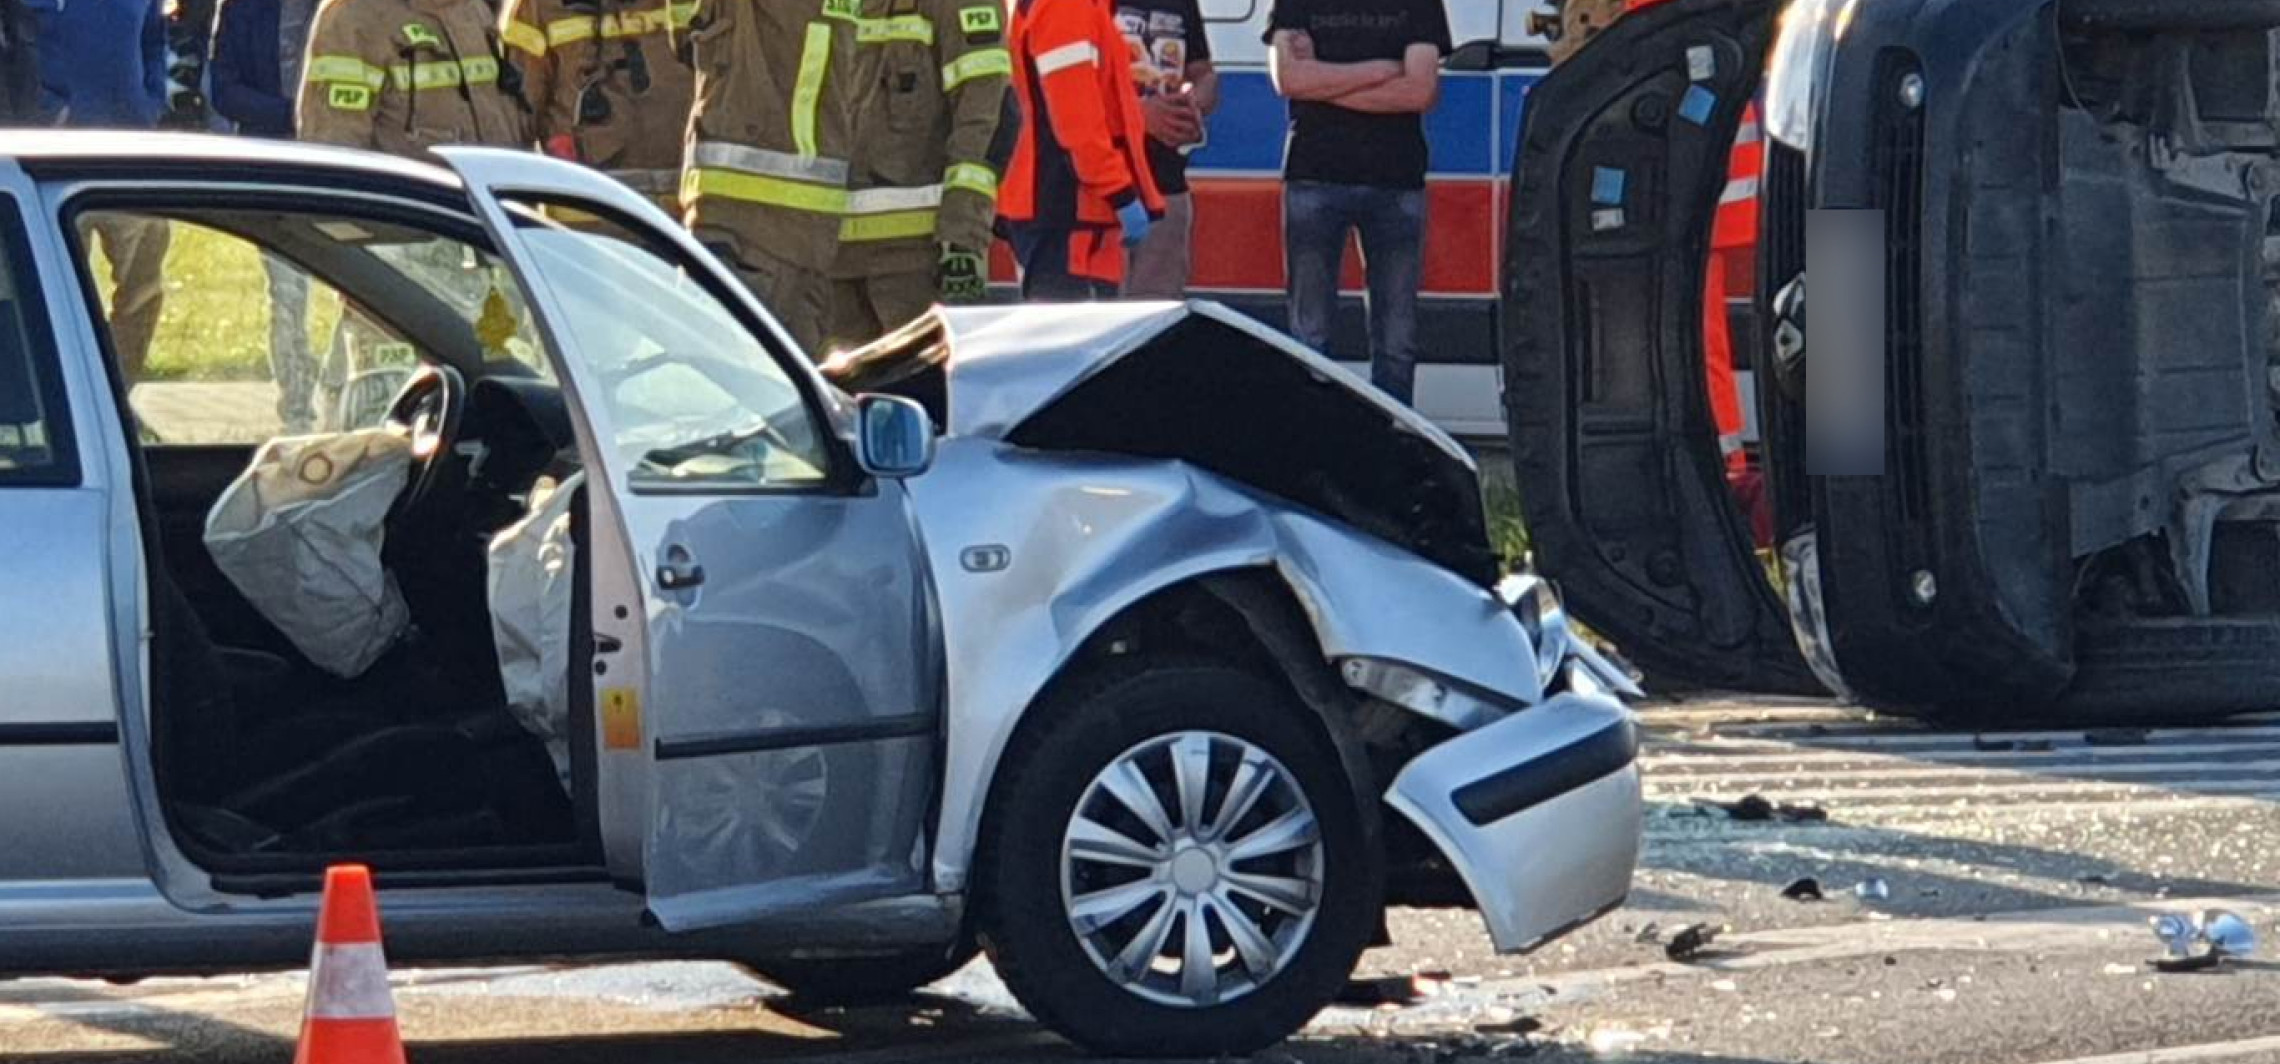 Inowrocław - Wypadek na Rąbinie. Kierowcy volkswagena zatrzymano prawo jazdy